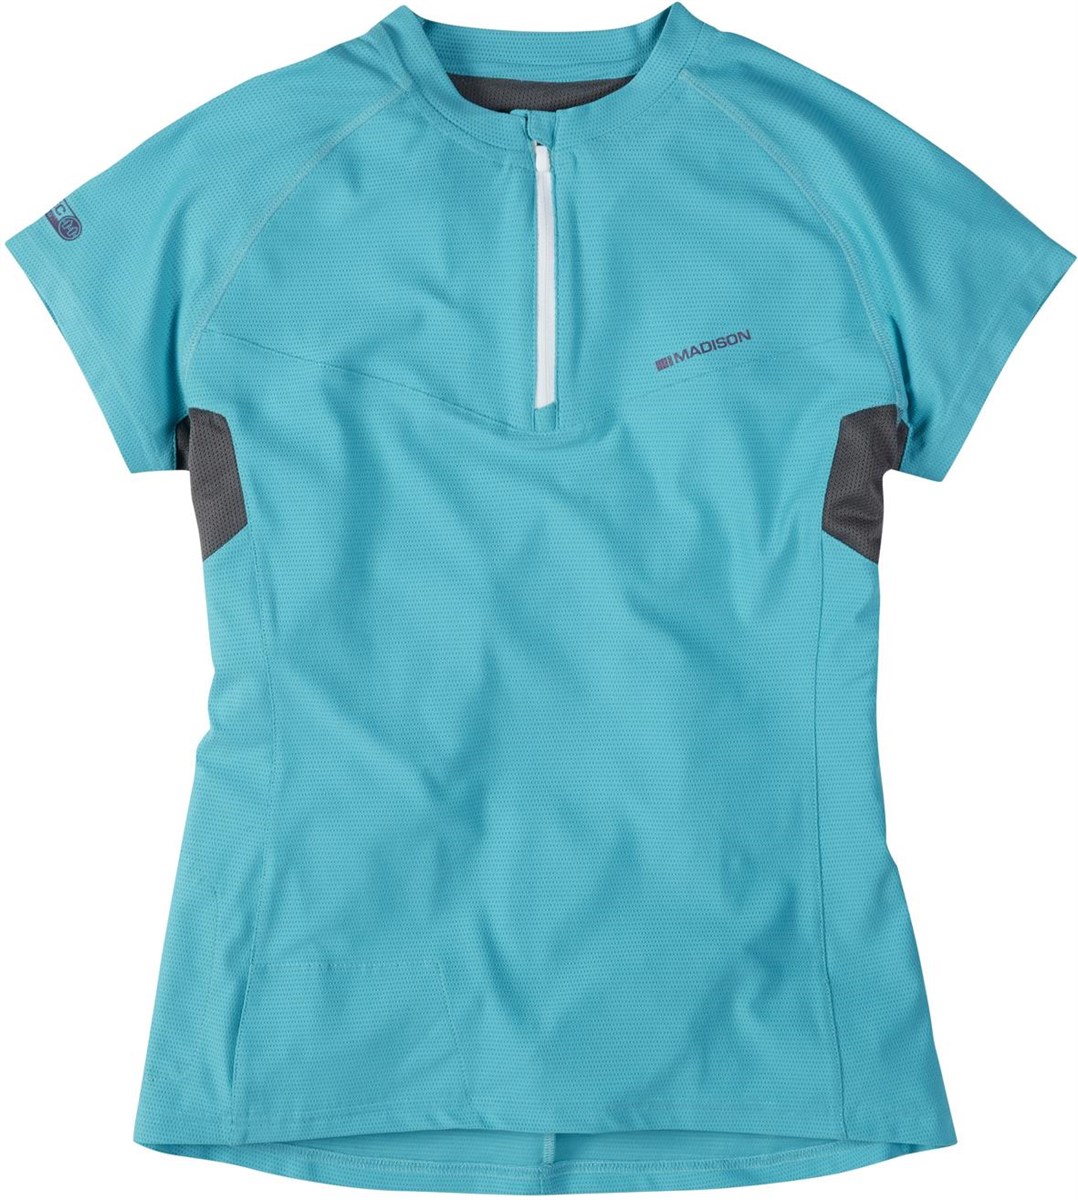 Madison Zena Womens Short Sleeve Jersey product image